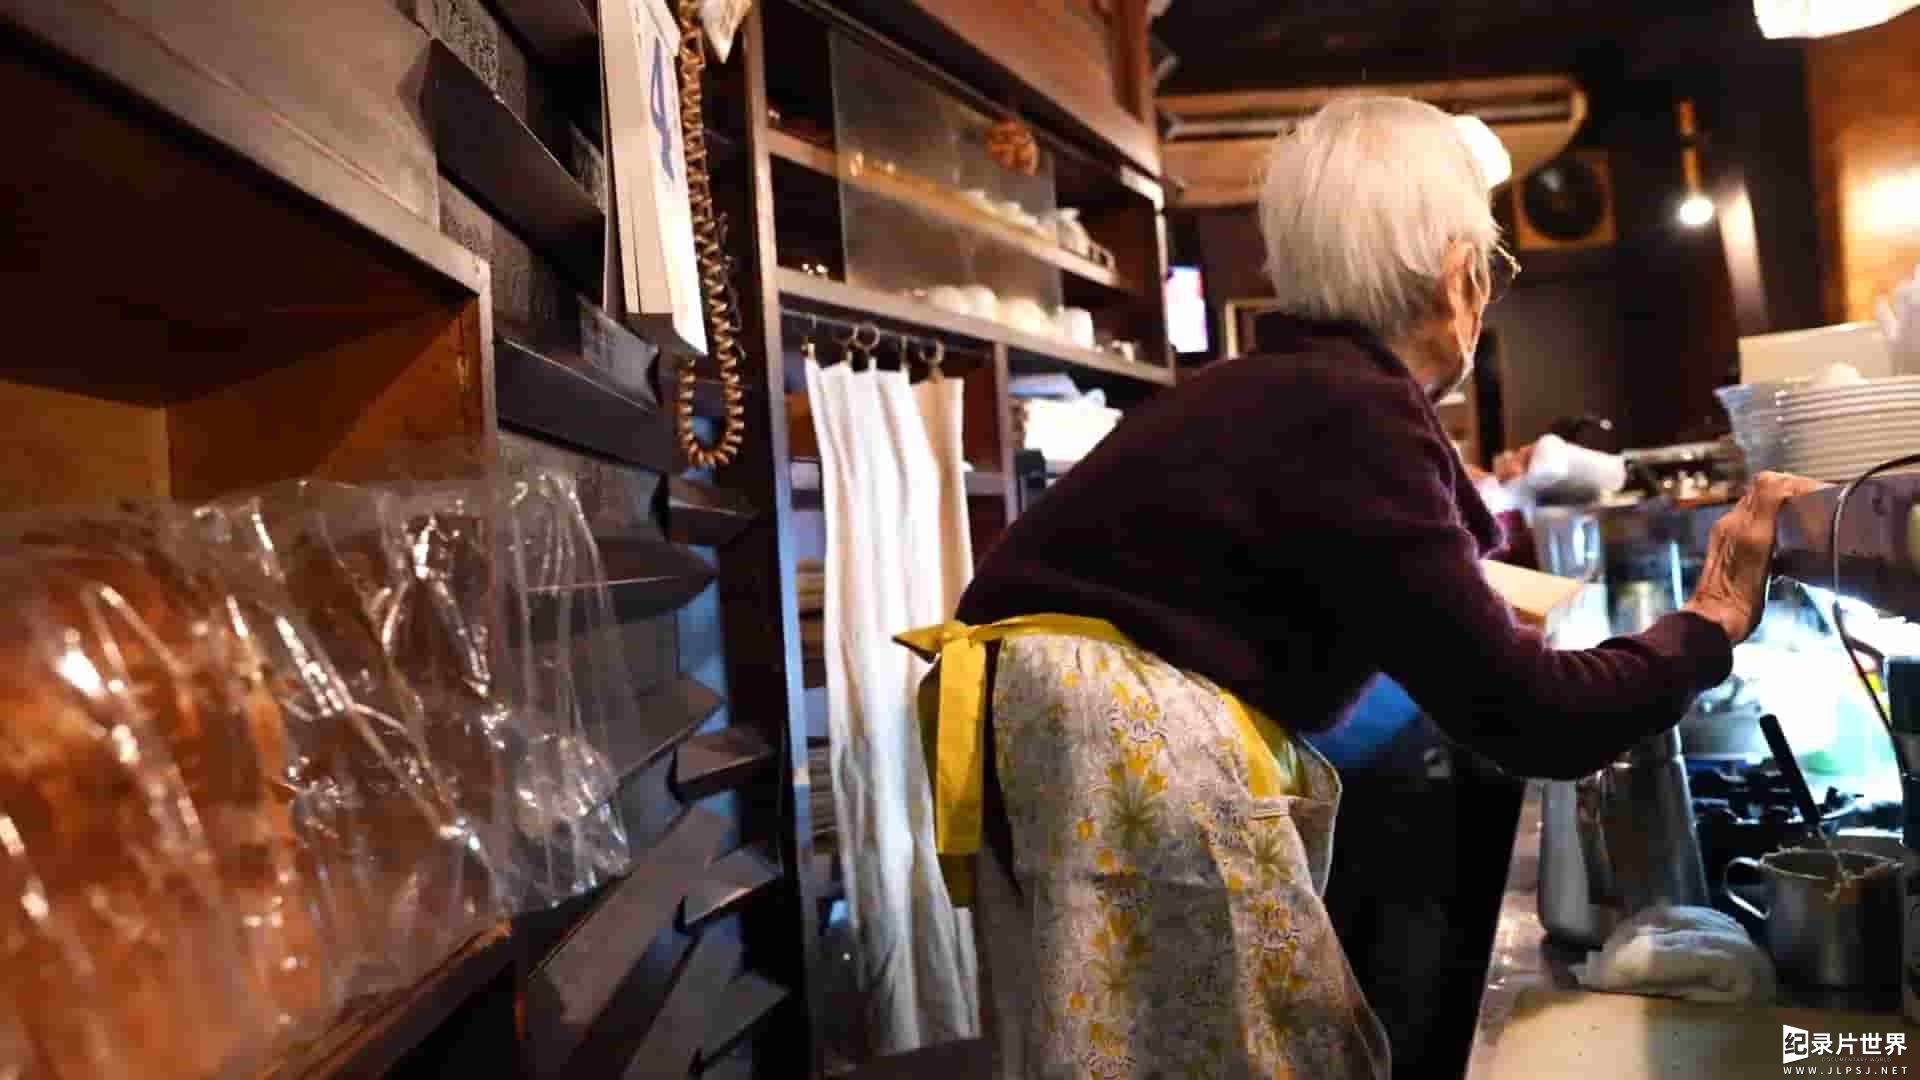 日本纪录片/日本美食与匠人精神纪录片《89岁老奶奶的咖啡店》全1集